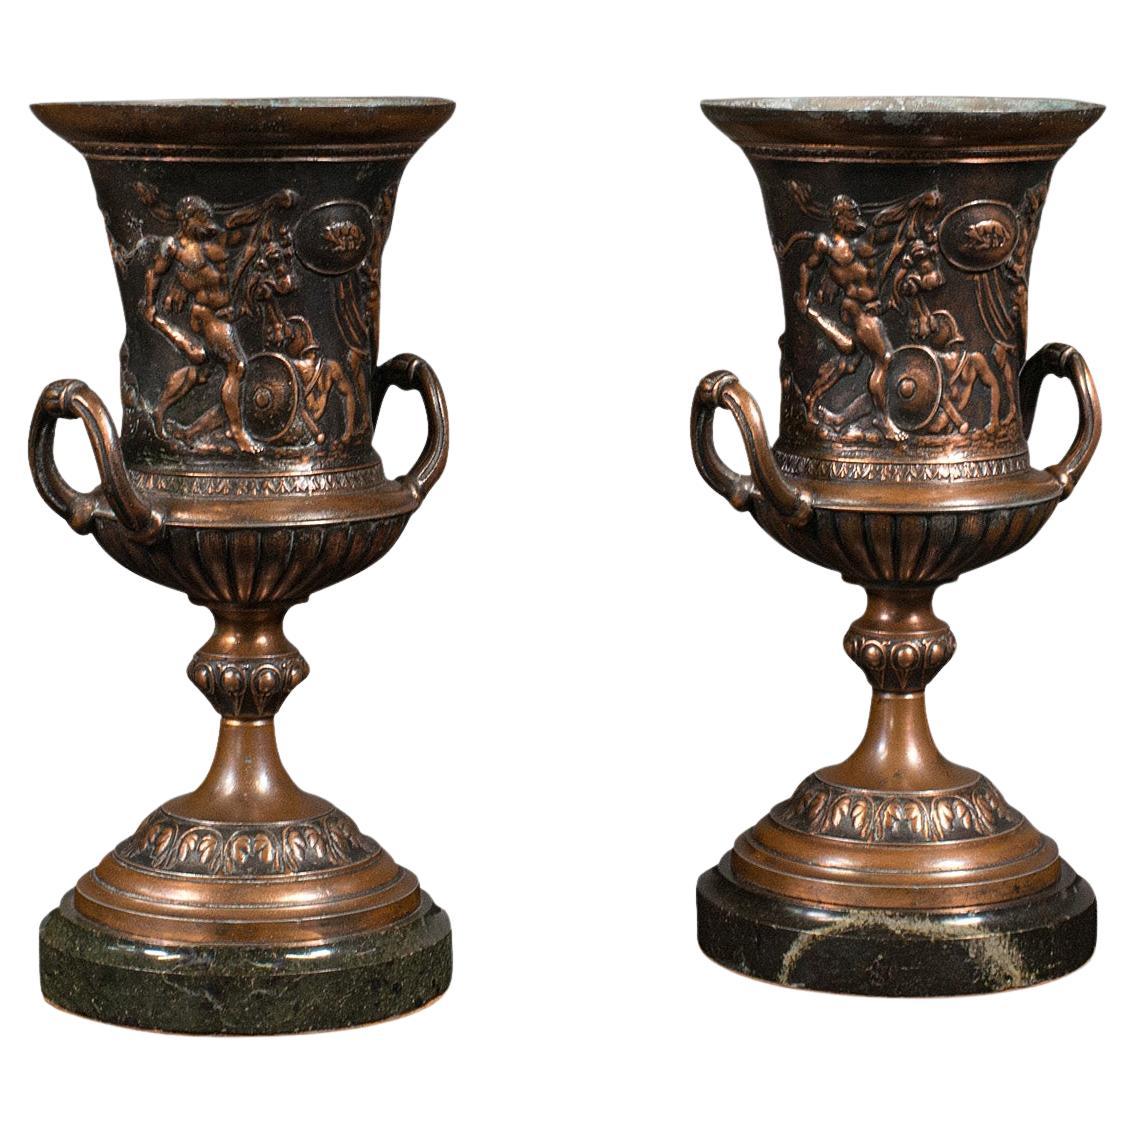 Pair, Antique Grand Tour Urns, Italian, Decorative Vase, Roman Taste, Victorian For Sale